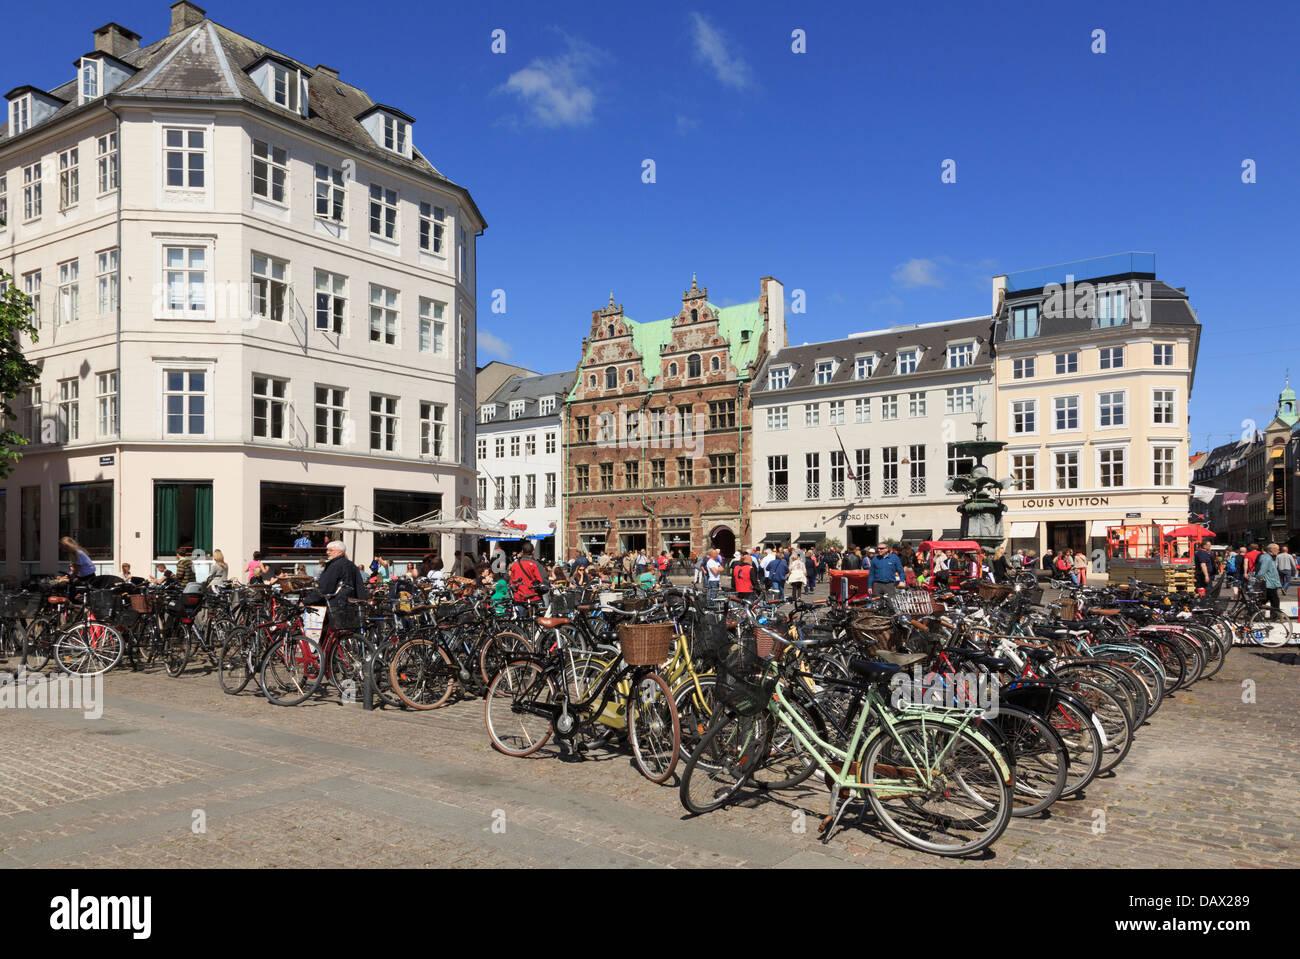 Molte biciclette parcheggiate in Hojbro Plads con la vecchia piazza Amagertorv al di là. Copenaghen, Zelanda, Danimarca e Scandinavia Foto Stock